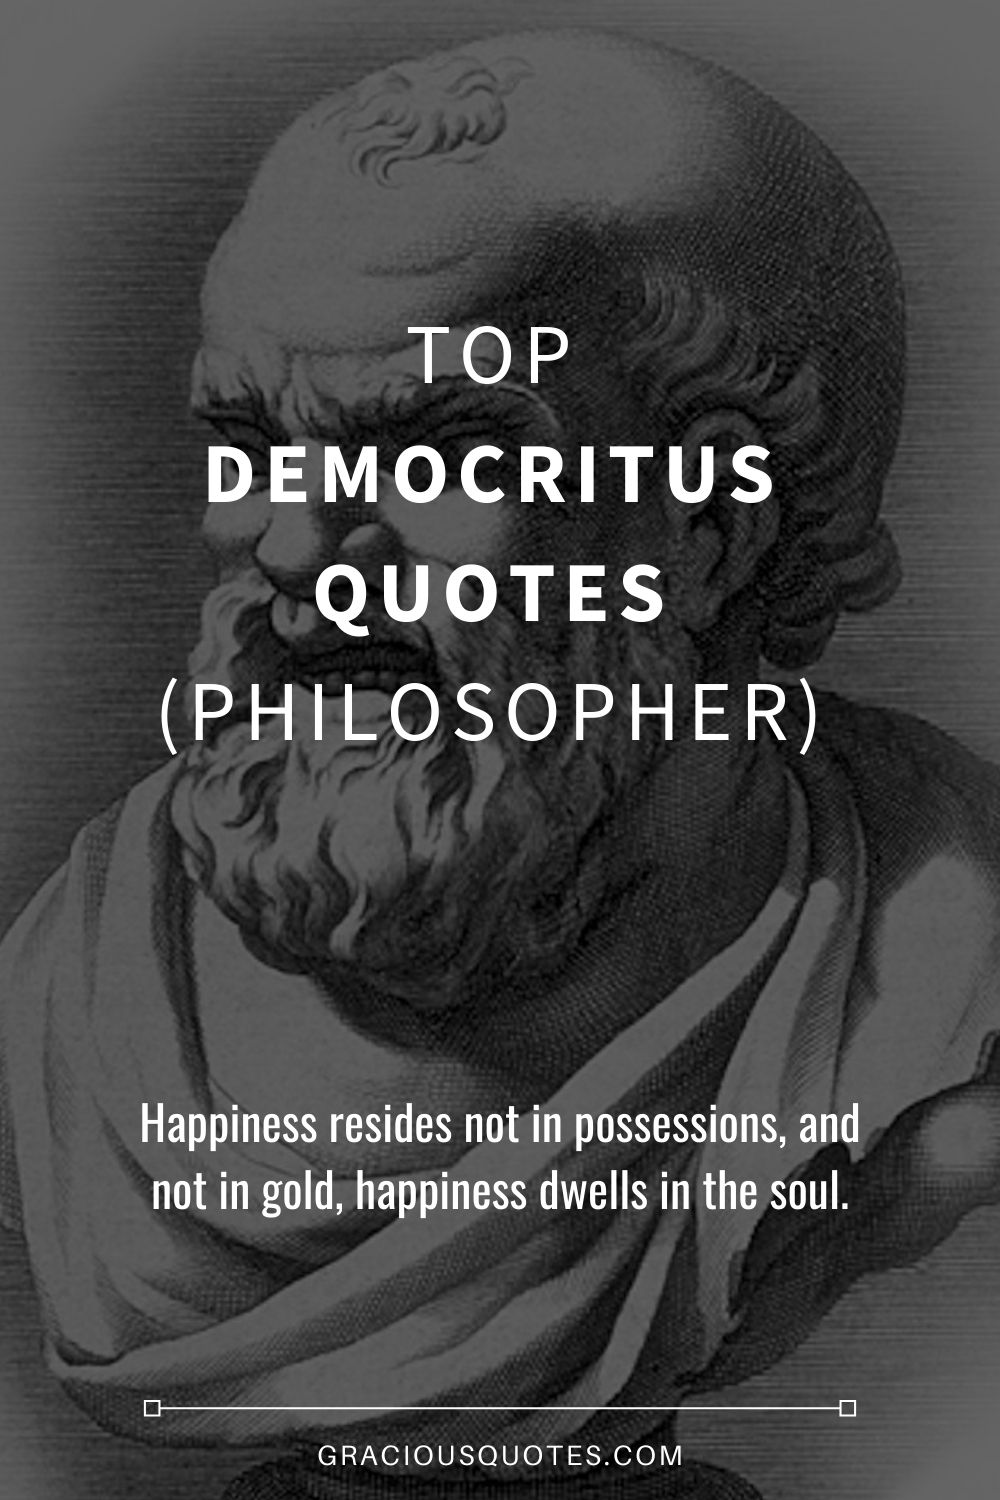 Top Democritus Quotes (PHILOSOPHER) - Gracious Quotes